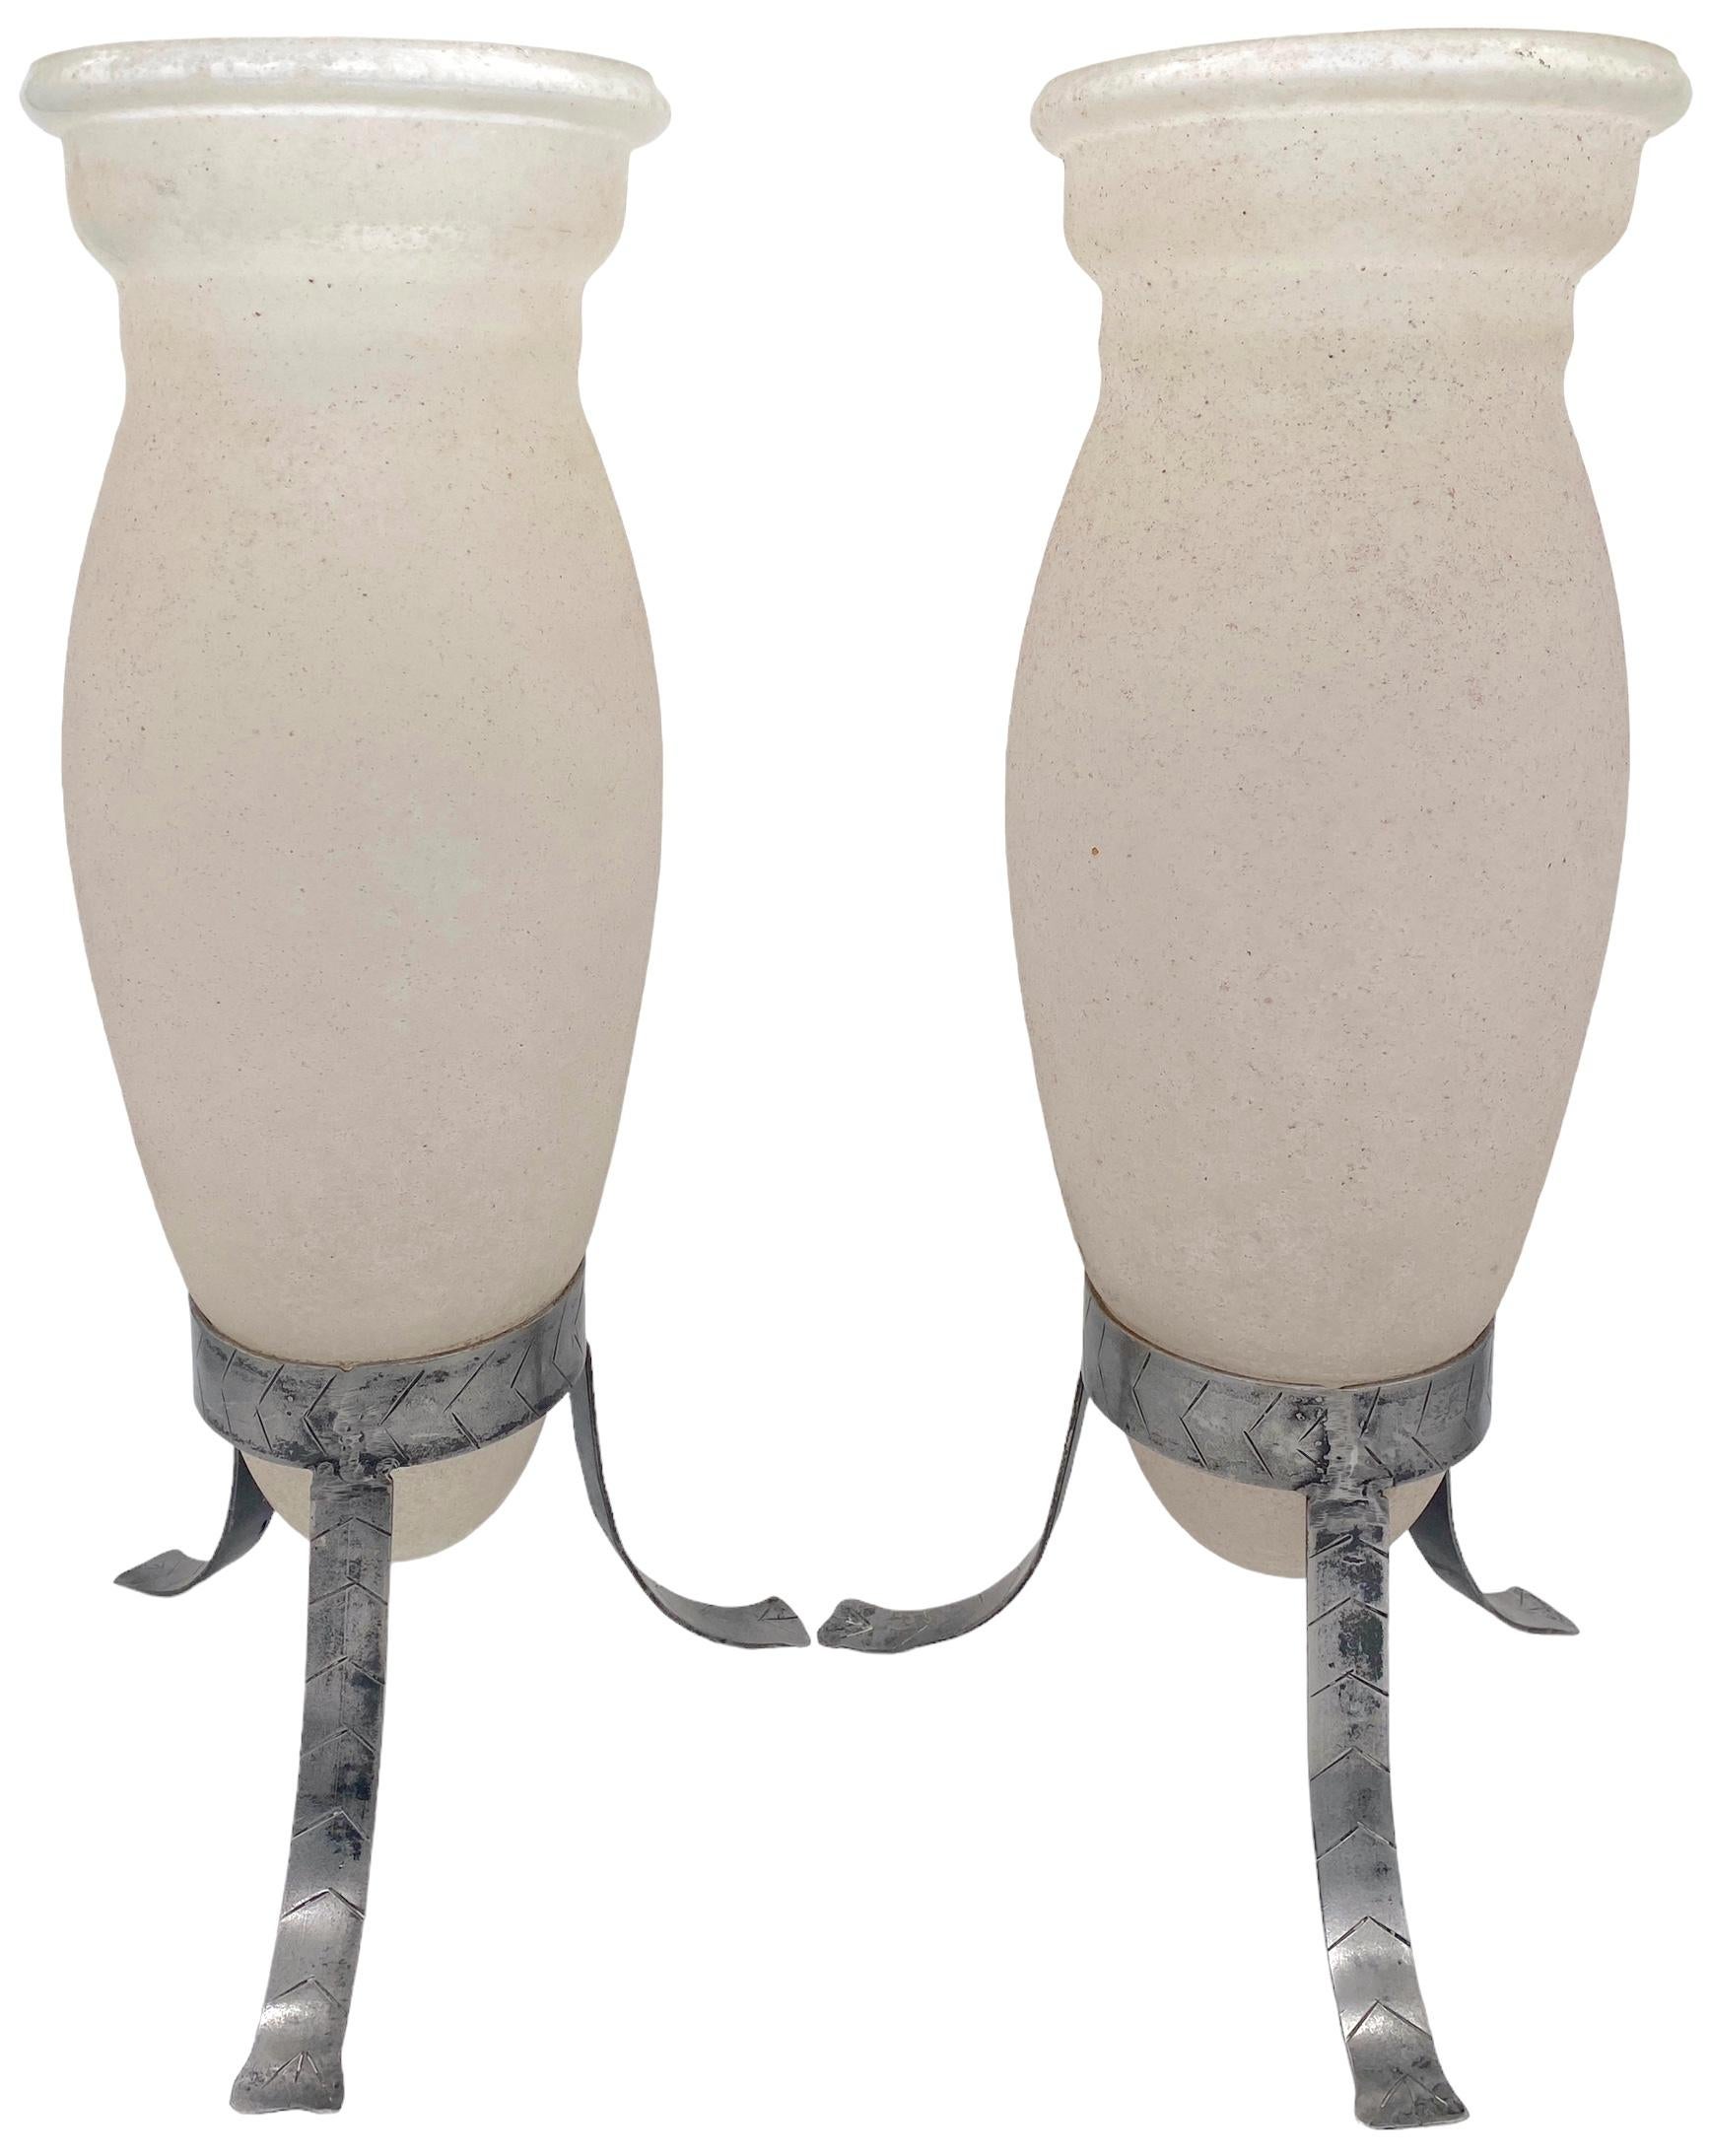 Grande paire de vases trompettes en fer et en acier de Murano attribués à Seguso Vetri d'Arte
Murano, Italie, Circa 1980

Paire de vases trompettes en fer et Scavo de Murano, attribués à l'artiste de renommée internationale  ateliers de Seguso Vetri